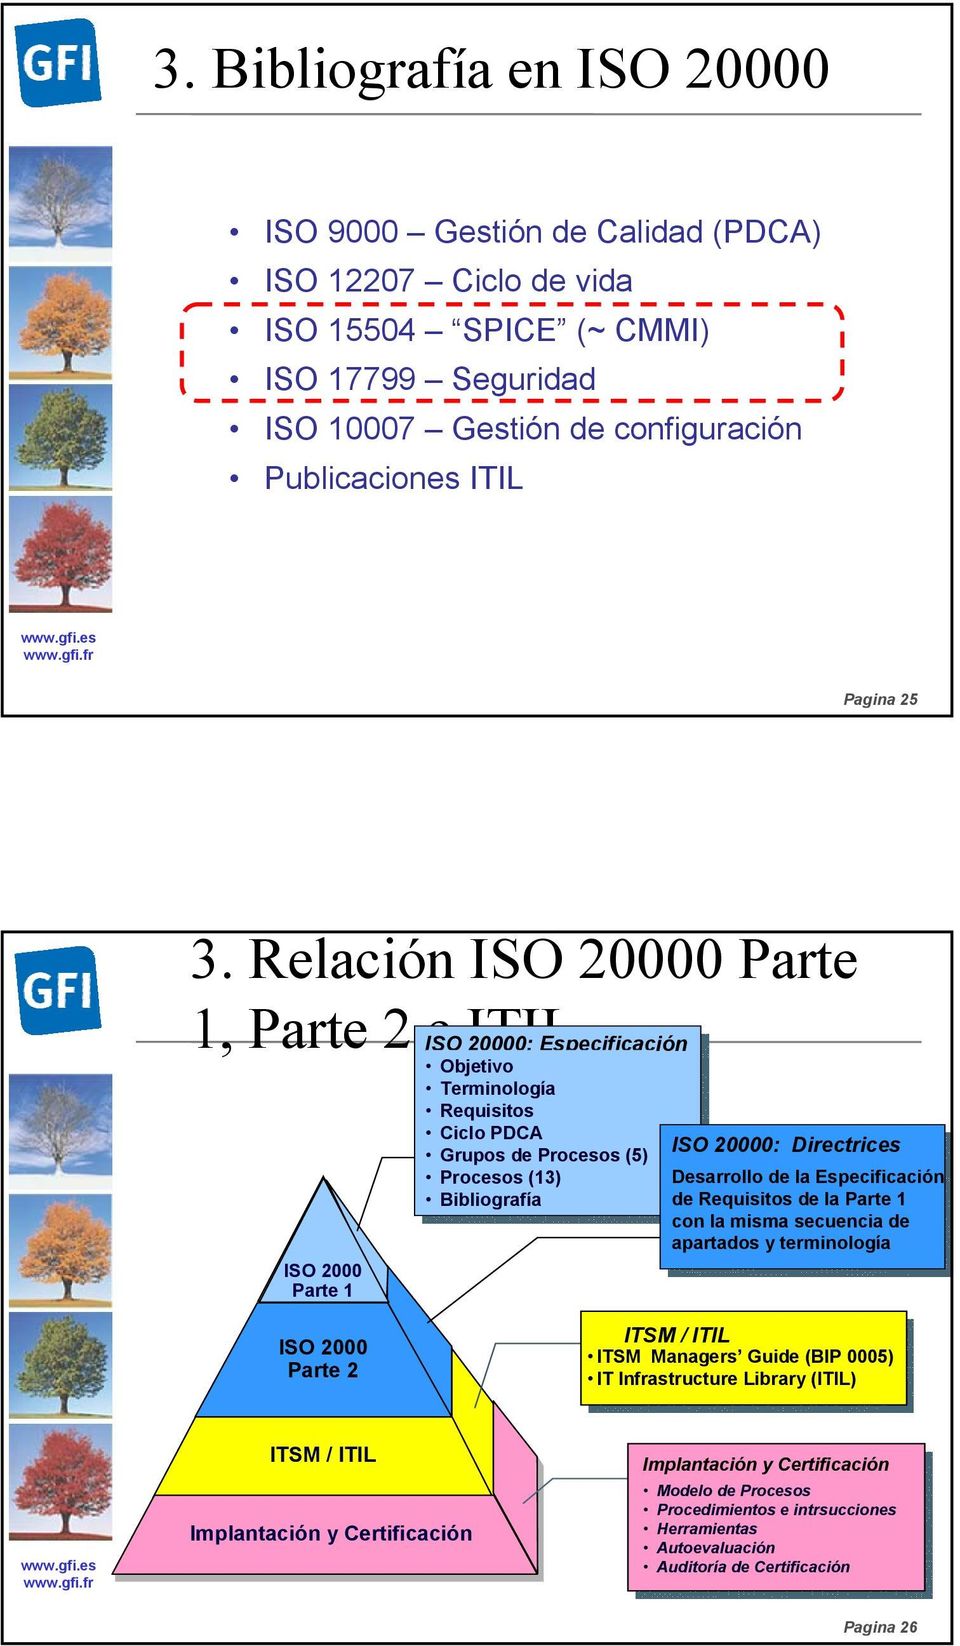 Directrices Desarrollo de la Especificación de Requisitos de la Parte 1 con la misma secuencia de apartados y terminología ISO 2000 Parte 2 ITSM / ITIL ITSM Managers Guide (BIP 0005) IT